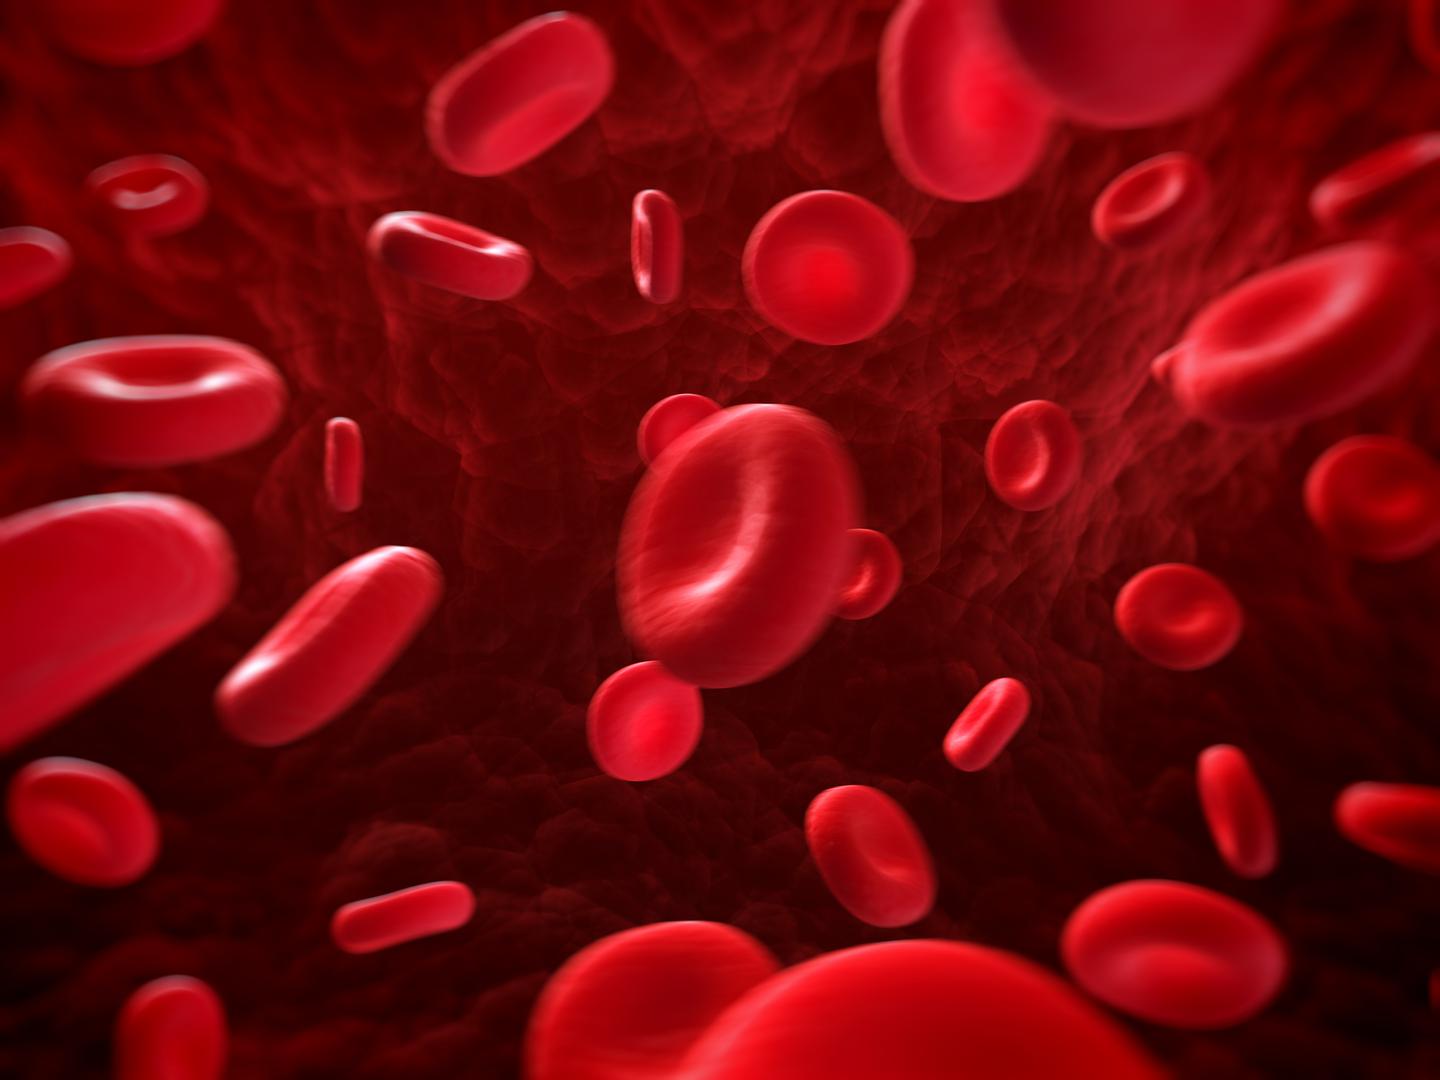 2. Anemija - Niska razina hemoglobina u krvi može biti simptom raka debelog crijeva, a obična krvna slika može dati uvid u to. Ako sumnjate na anemiju, javite se svom liječniku. Ako je utvrđeno da imate nisku razinu hemoglobina, preporučuje se provesti kolonoskopiju i pregled gastrointestinalnog trakta. 